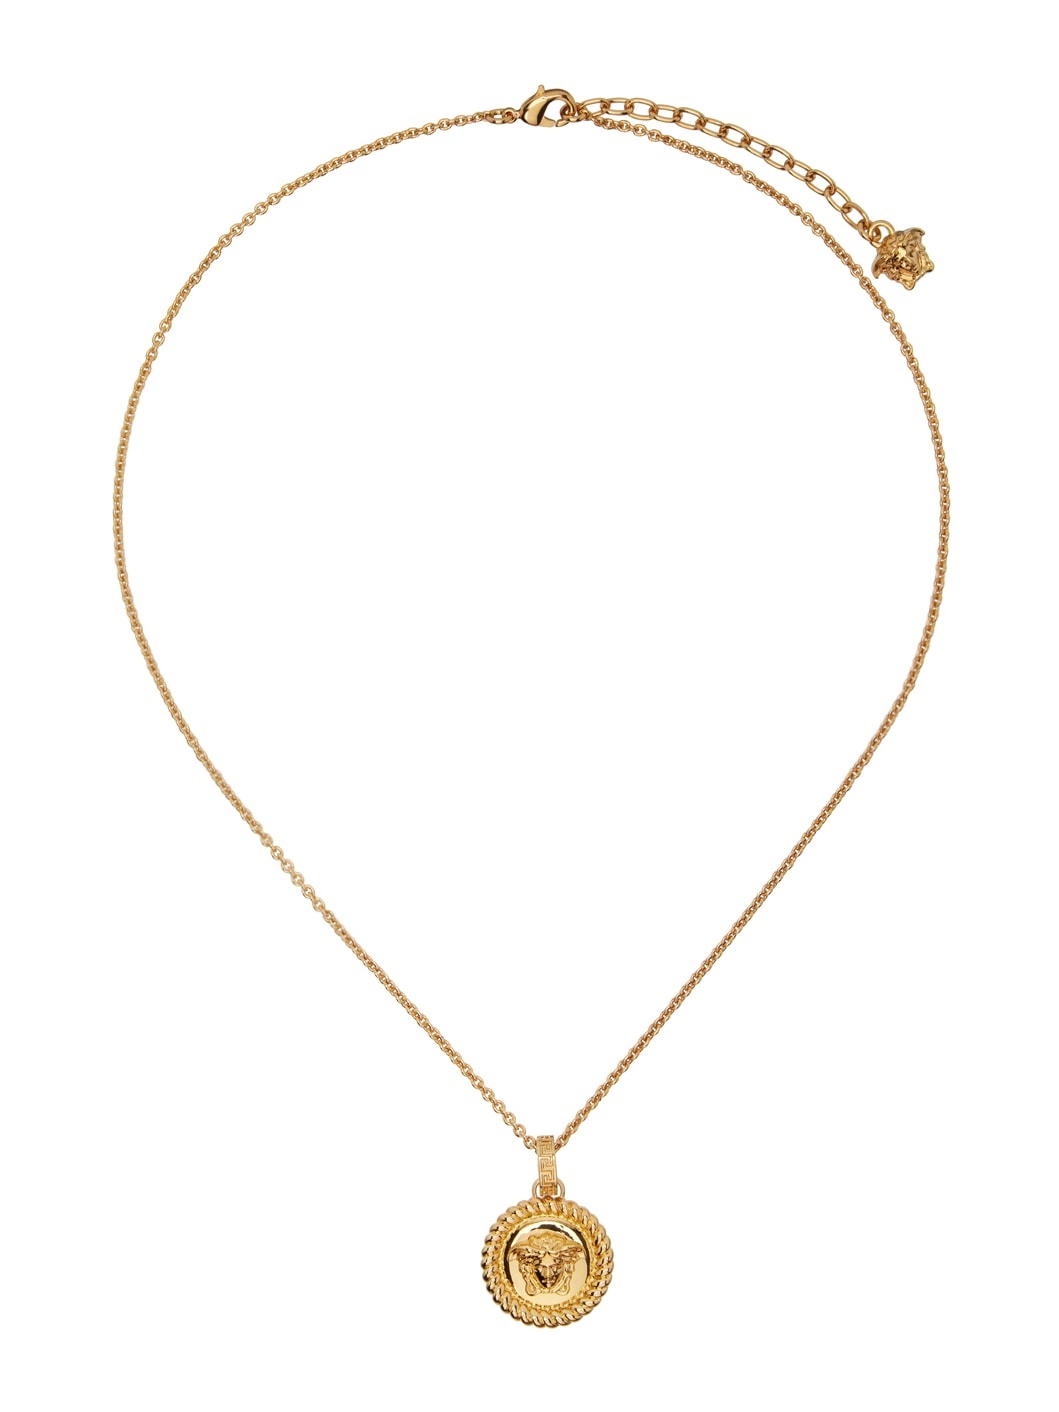 Gold Medusa Necklace - 1